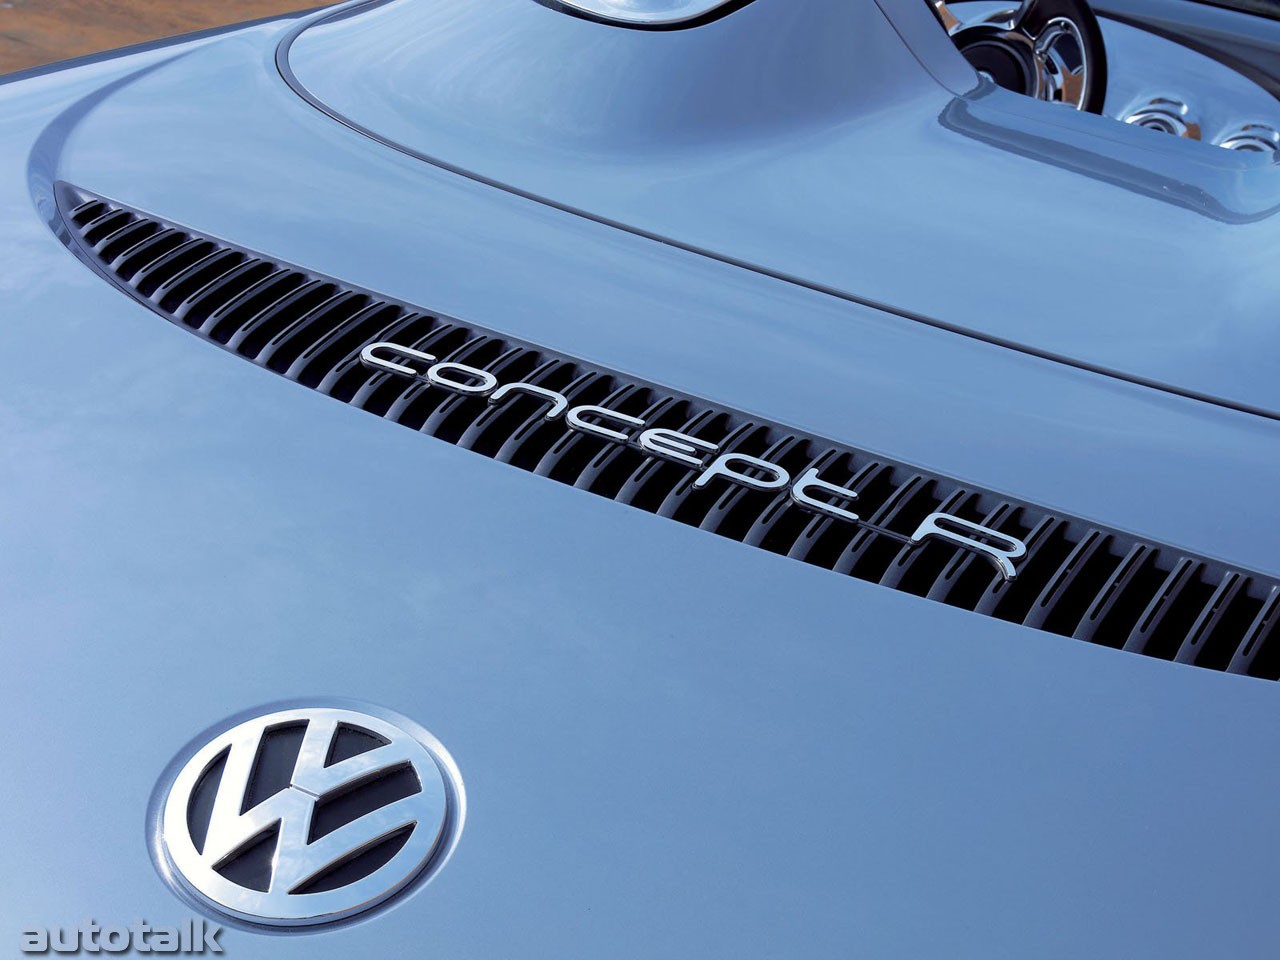 Volkswagen Concept R